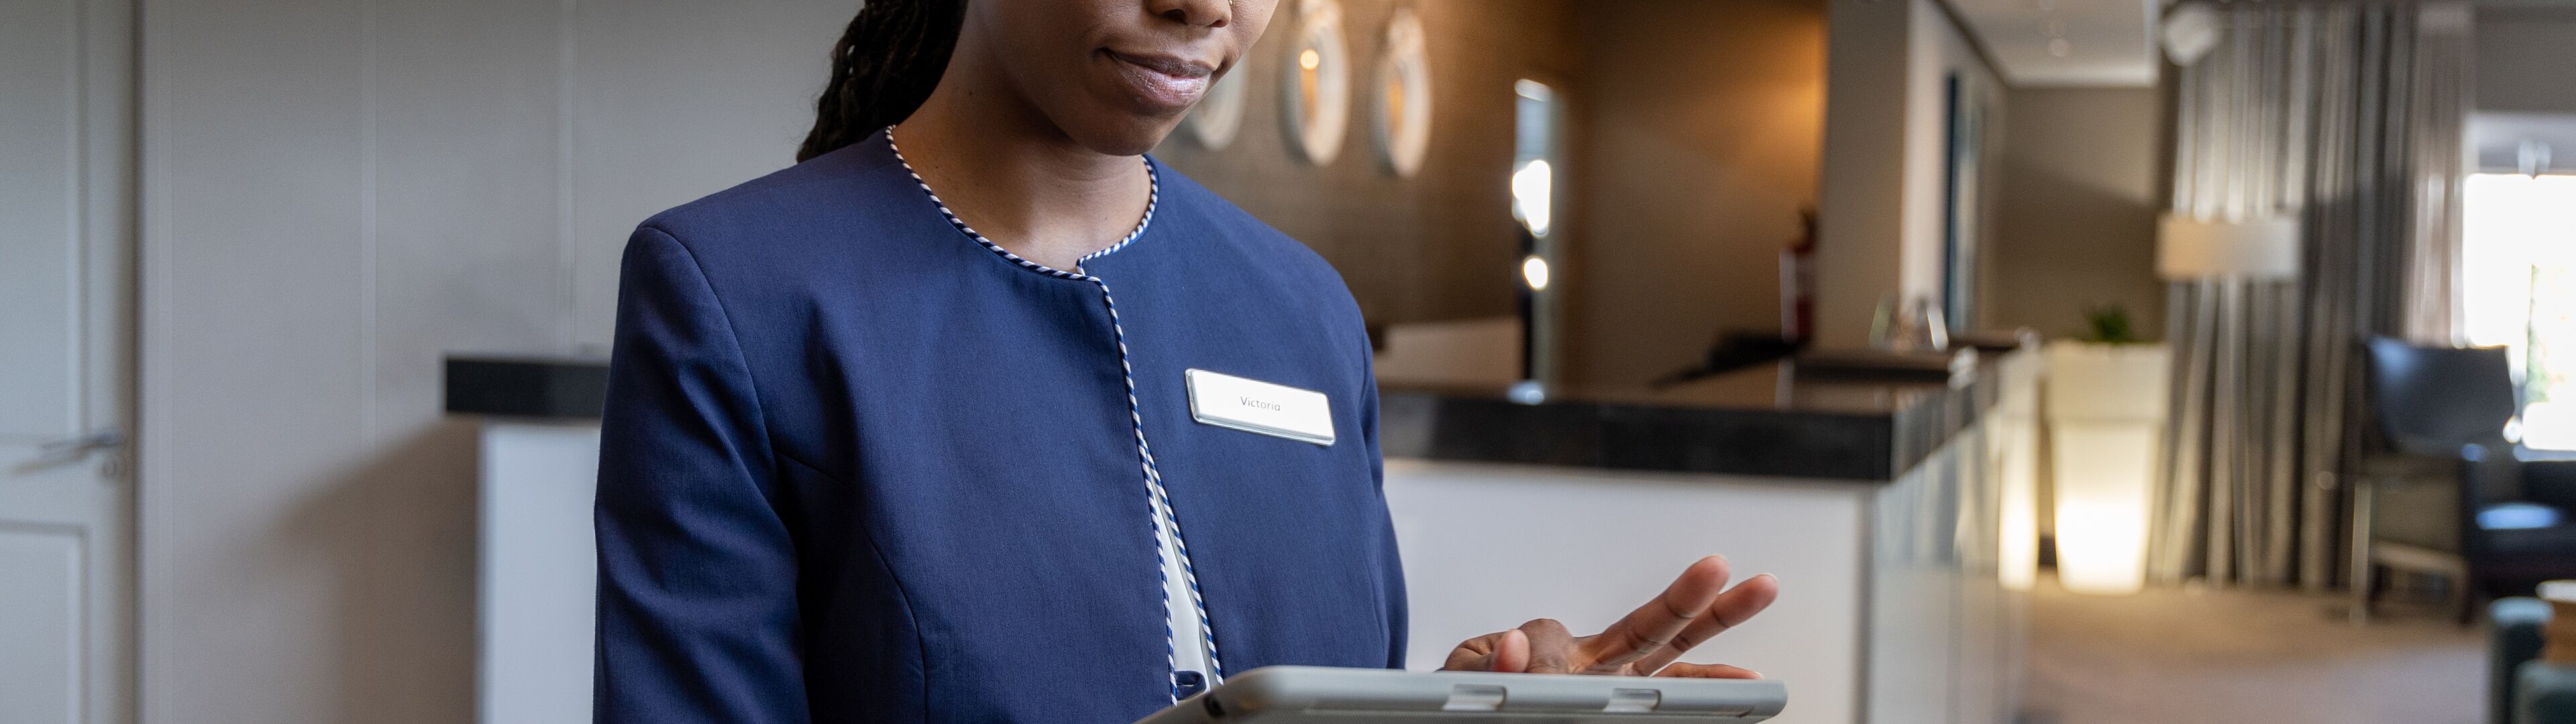 Un employé d'hôtel utilise une tablette, probablement pour gérer les services aux clients ou les enregistrements dans le hall.

